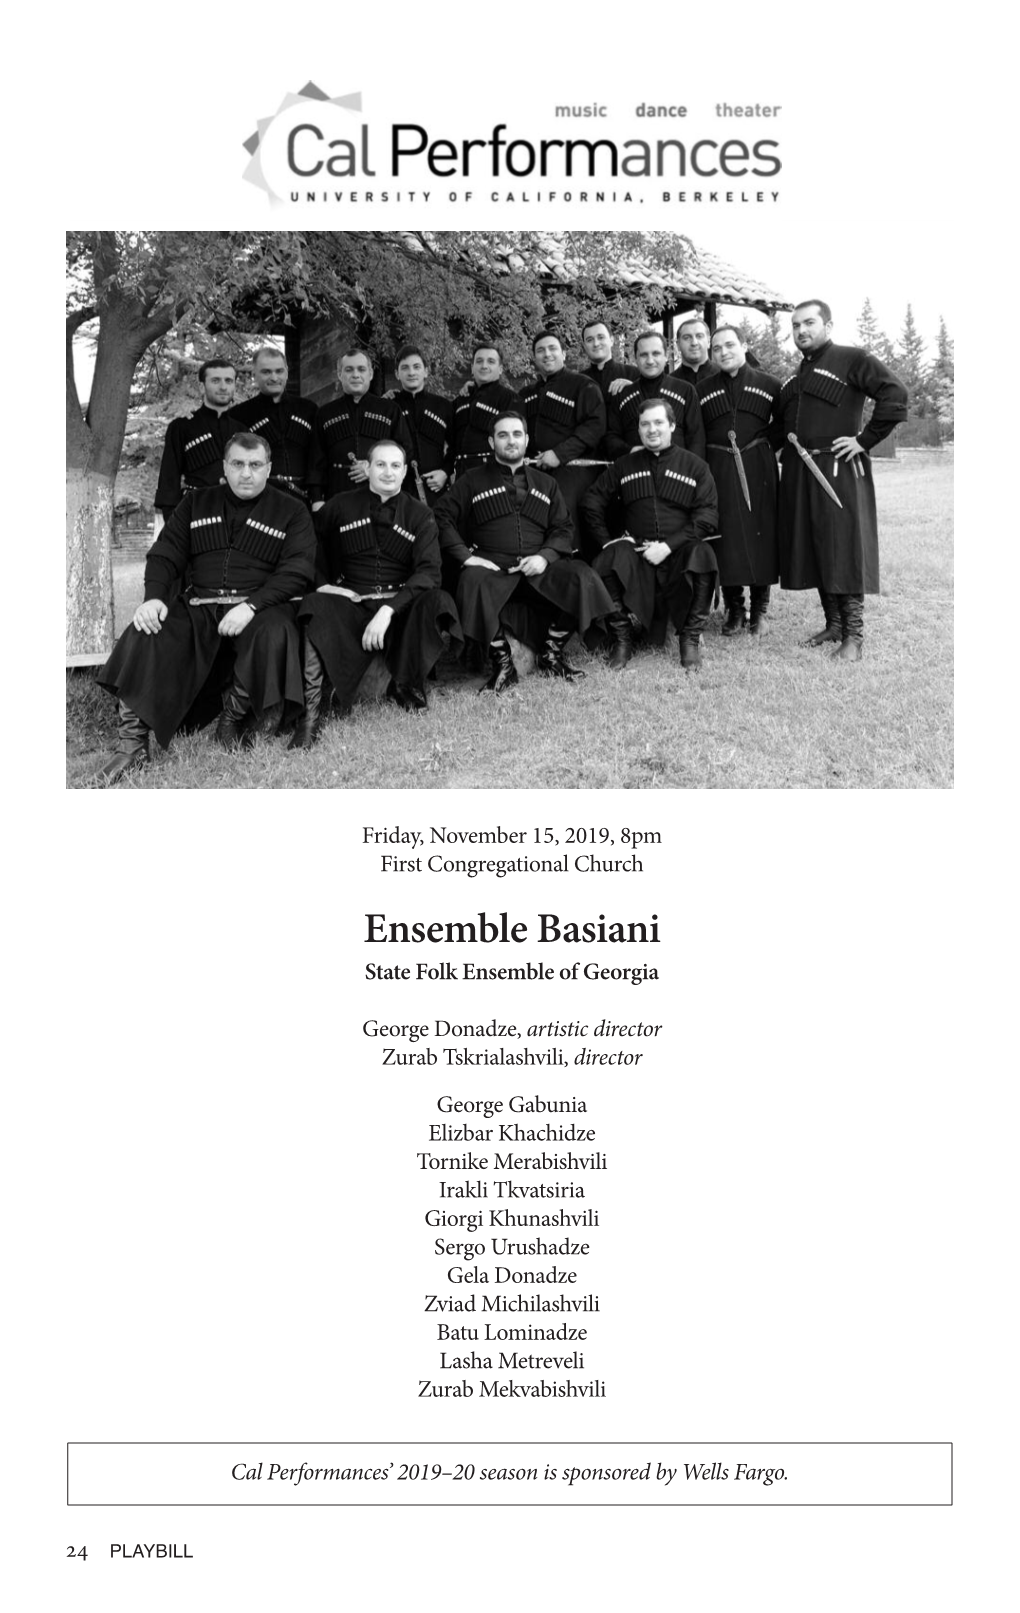 Ensemble Basiani State Folk Ensemble of Georgia